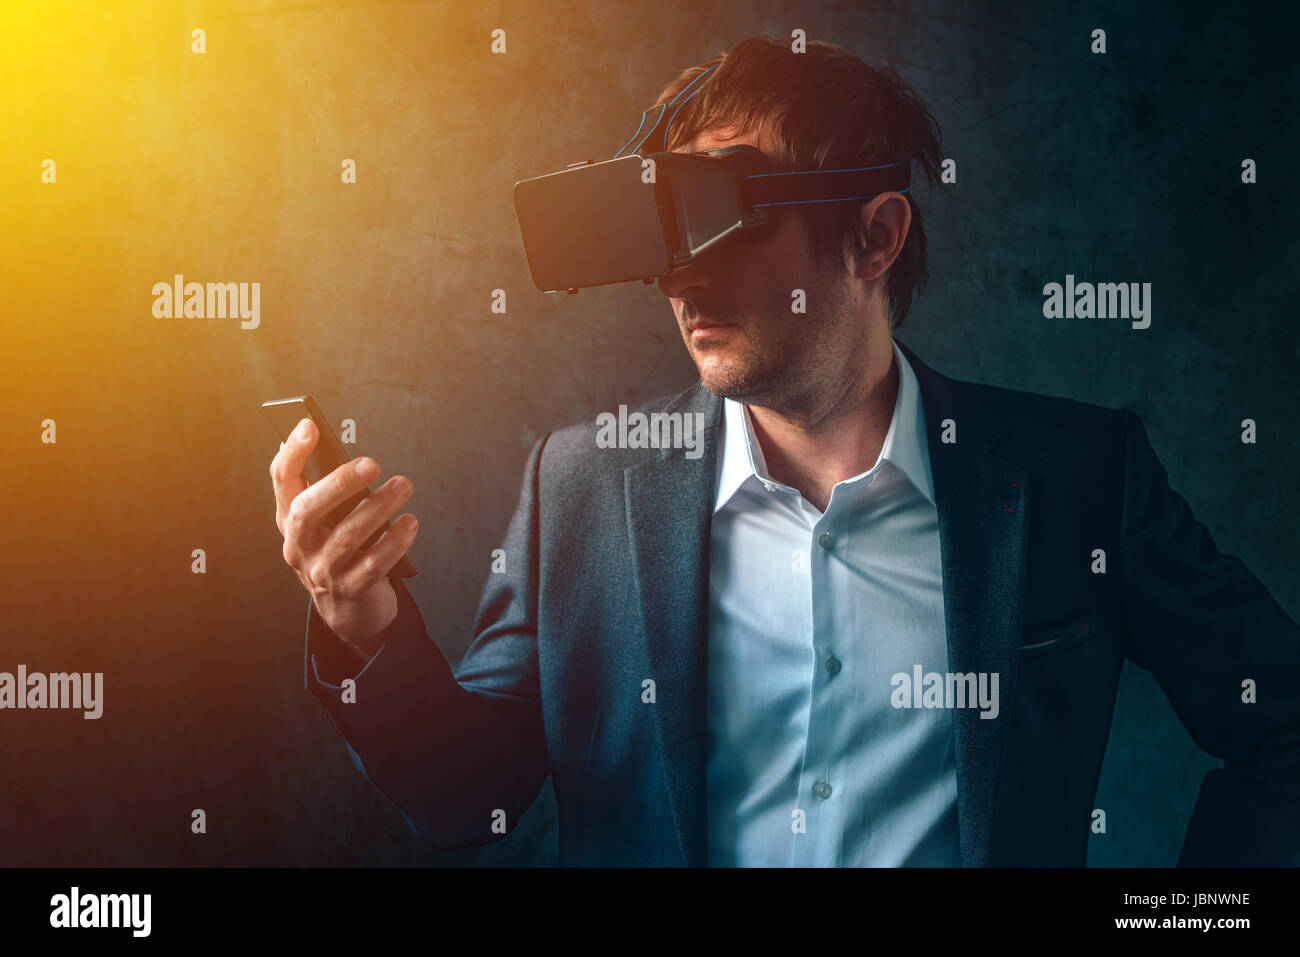 La réalité virtuelle et la technologie futuriste dans l'entreprise moderne, businessman avec casque VR et smartphone à l'aide de nouveaux gadgets haute technologie pour développer et gérer Banque D'Images